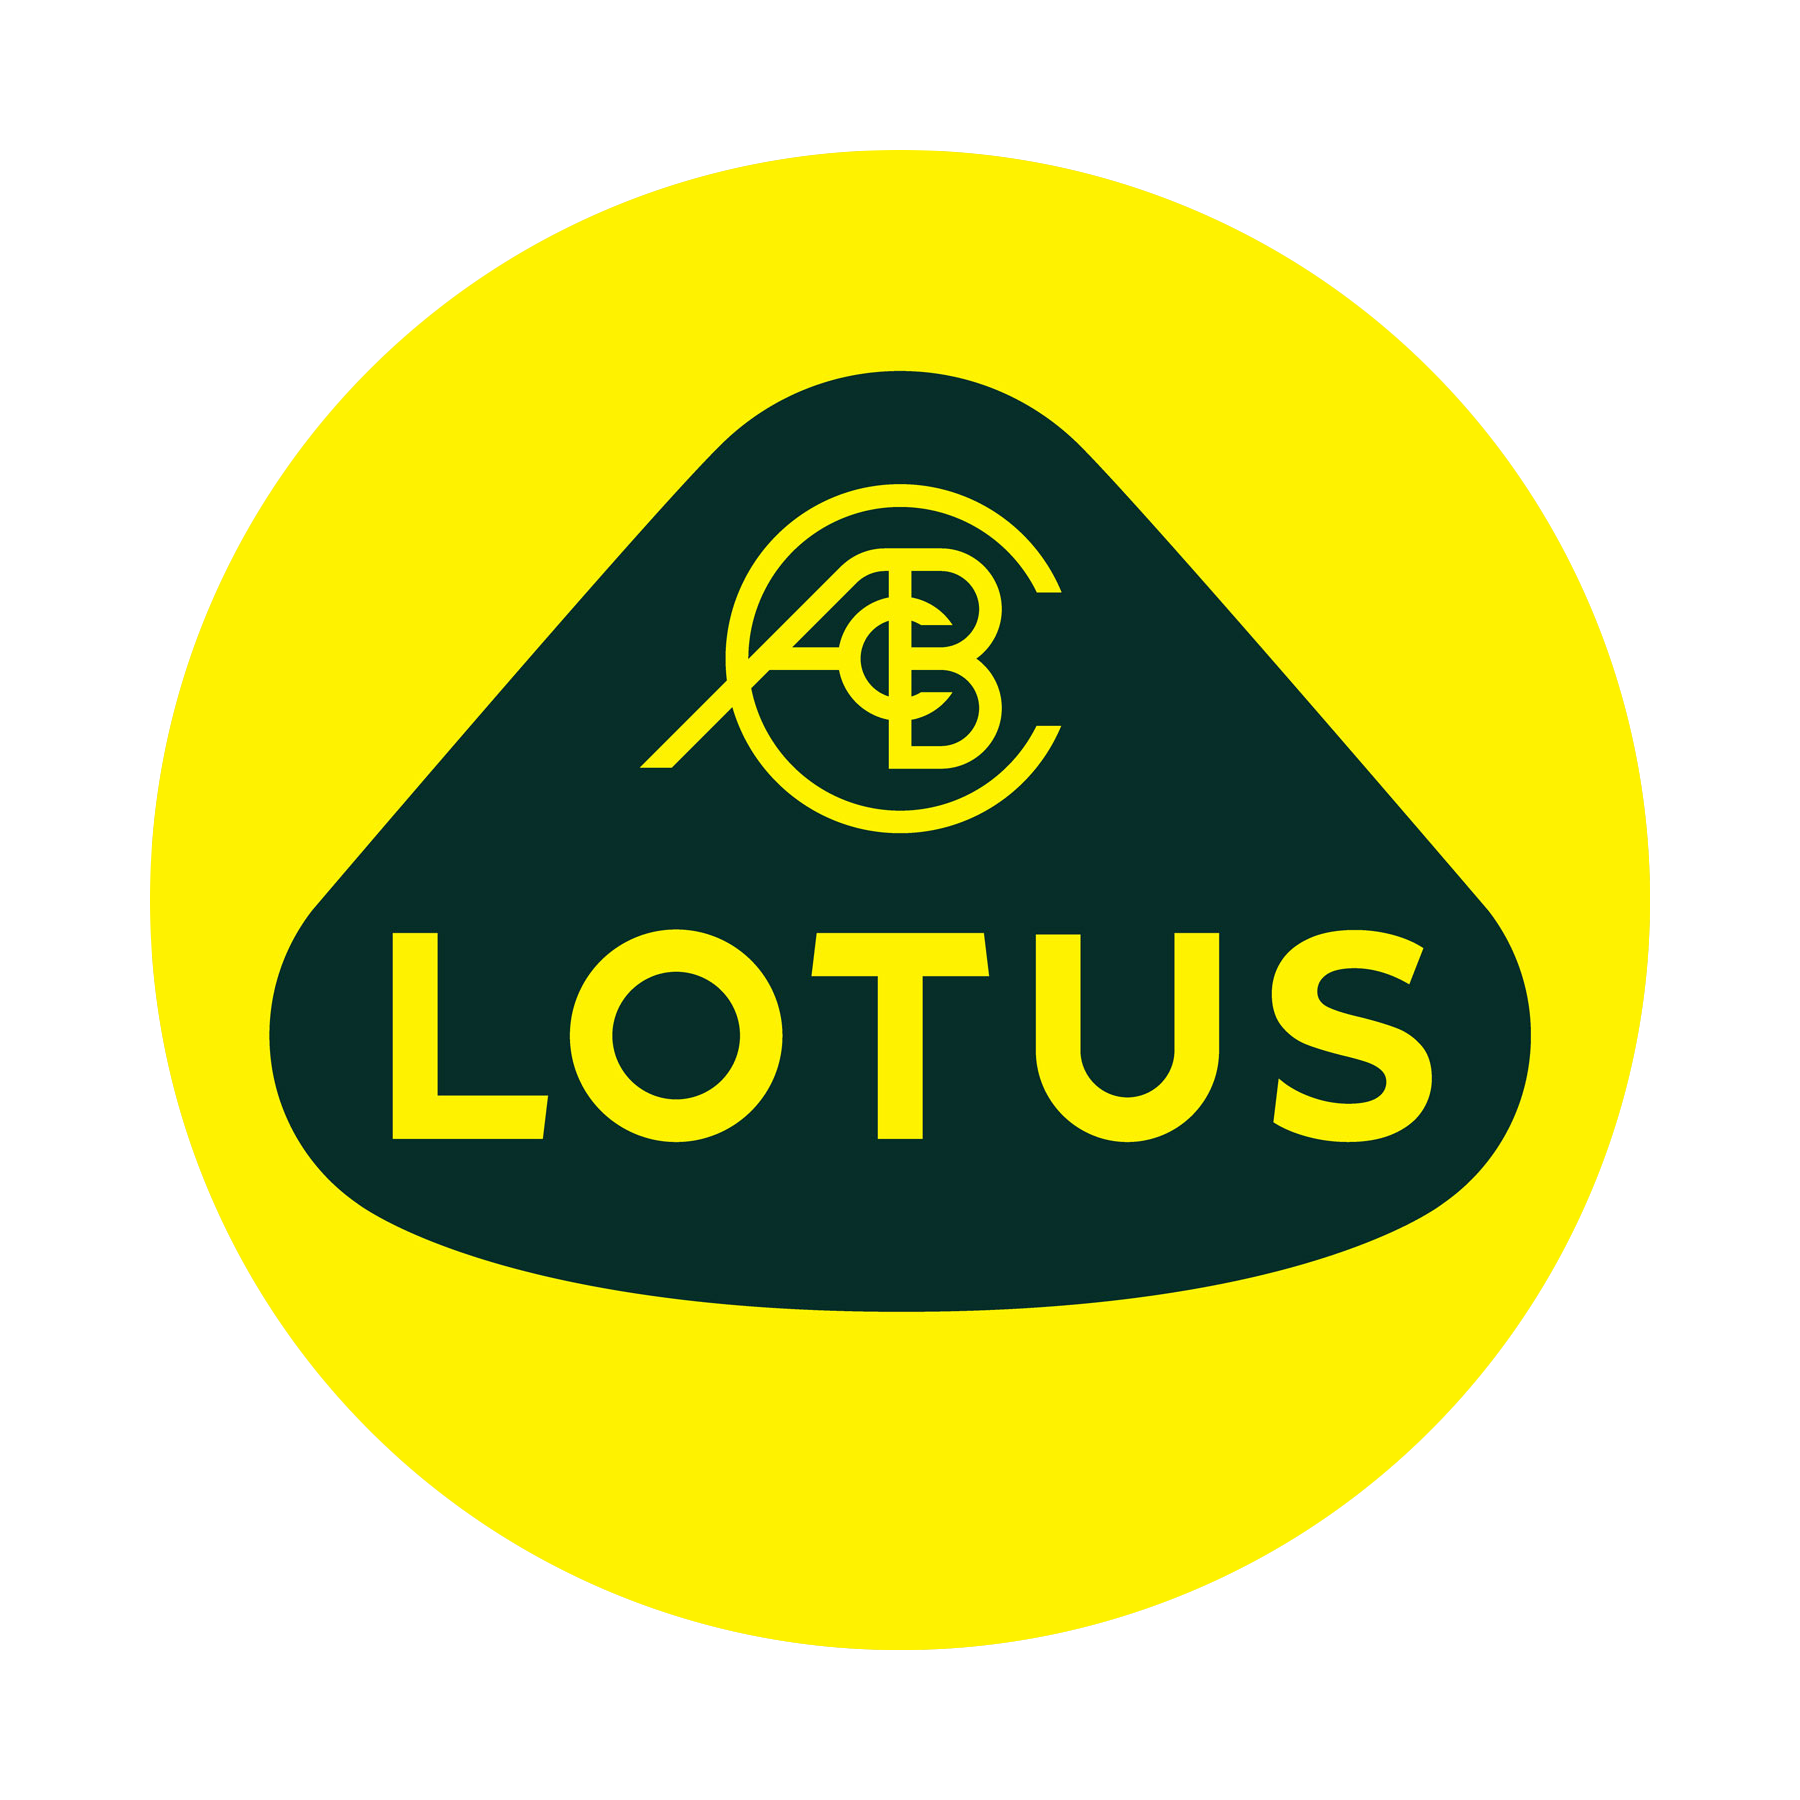 Lotus-logo-2019-1800x1800.png